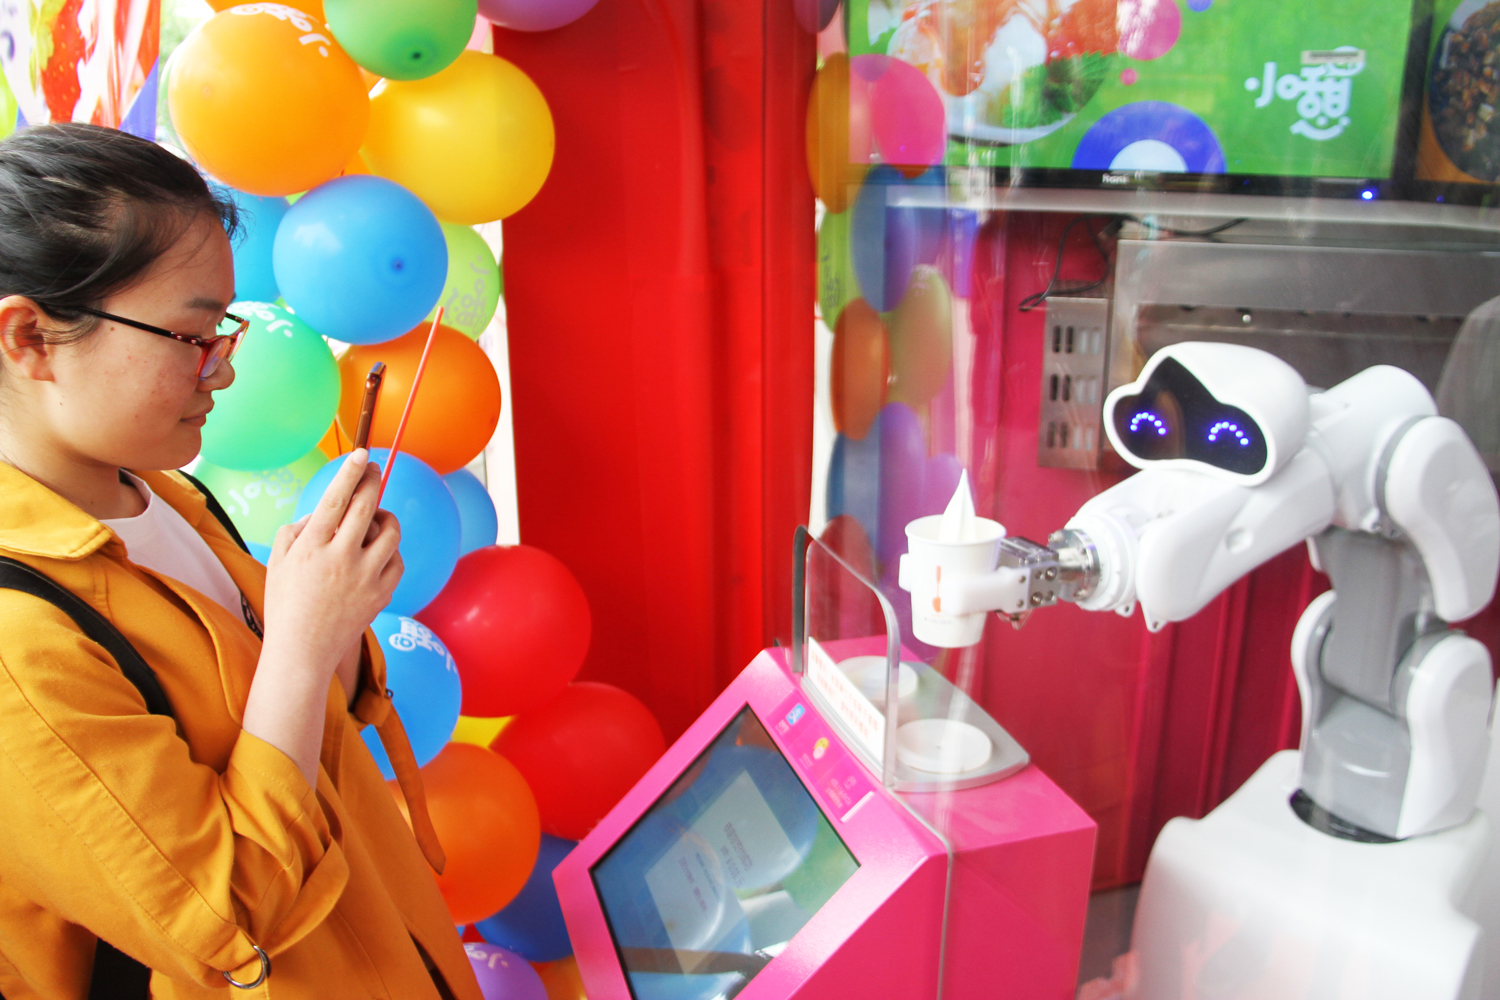 名为"小憇"的冰淇淋自动售卖机,三个萌萌哒机器人为学生们提供服务